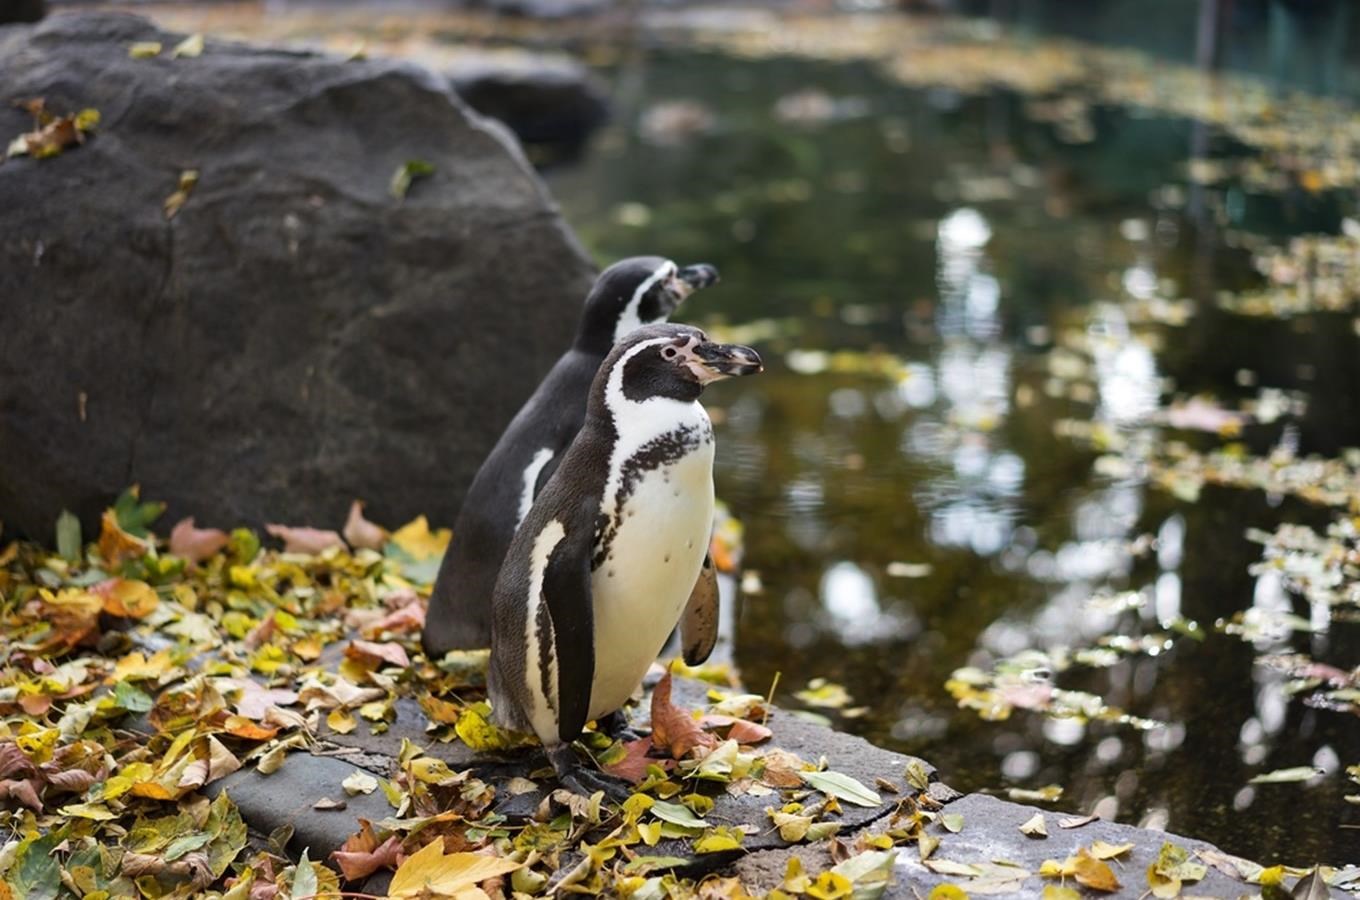 V Zoo Praha jsou venkovní expozice otevřeny pro návštěvníky